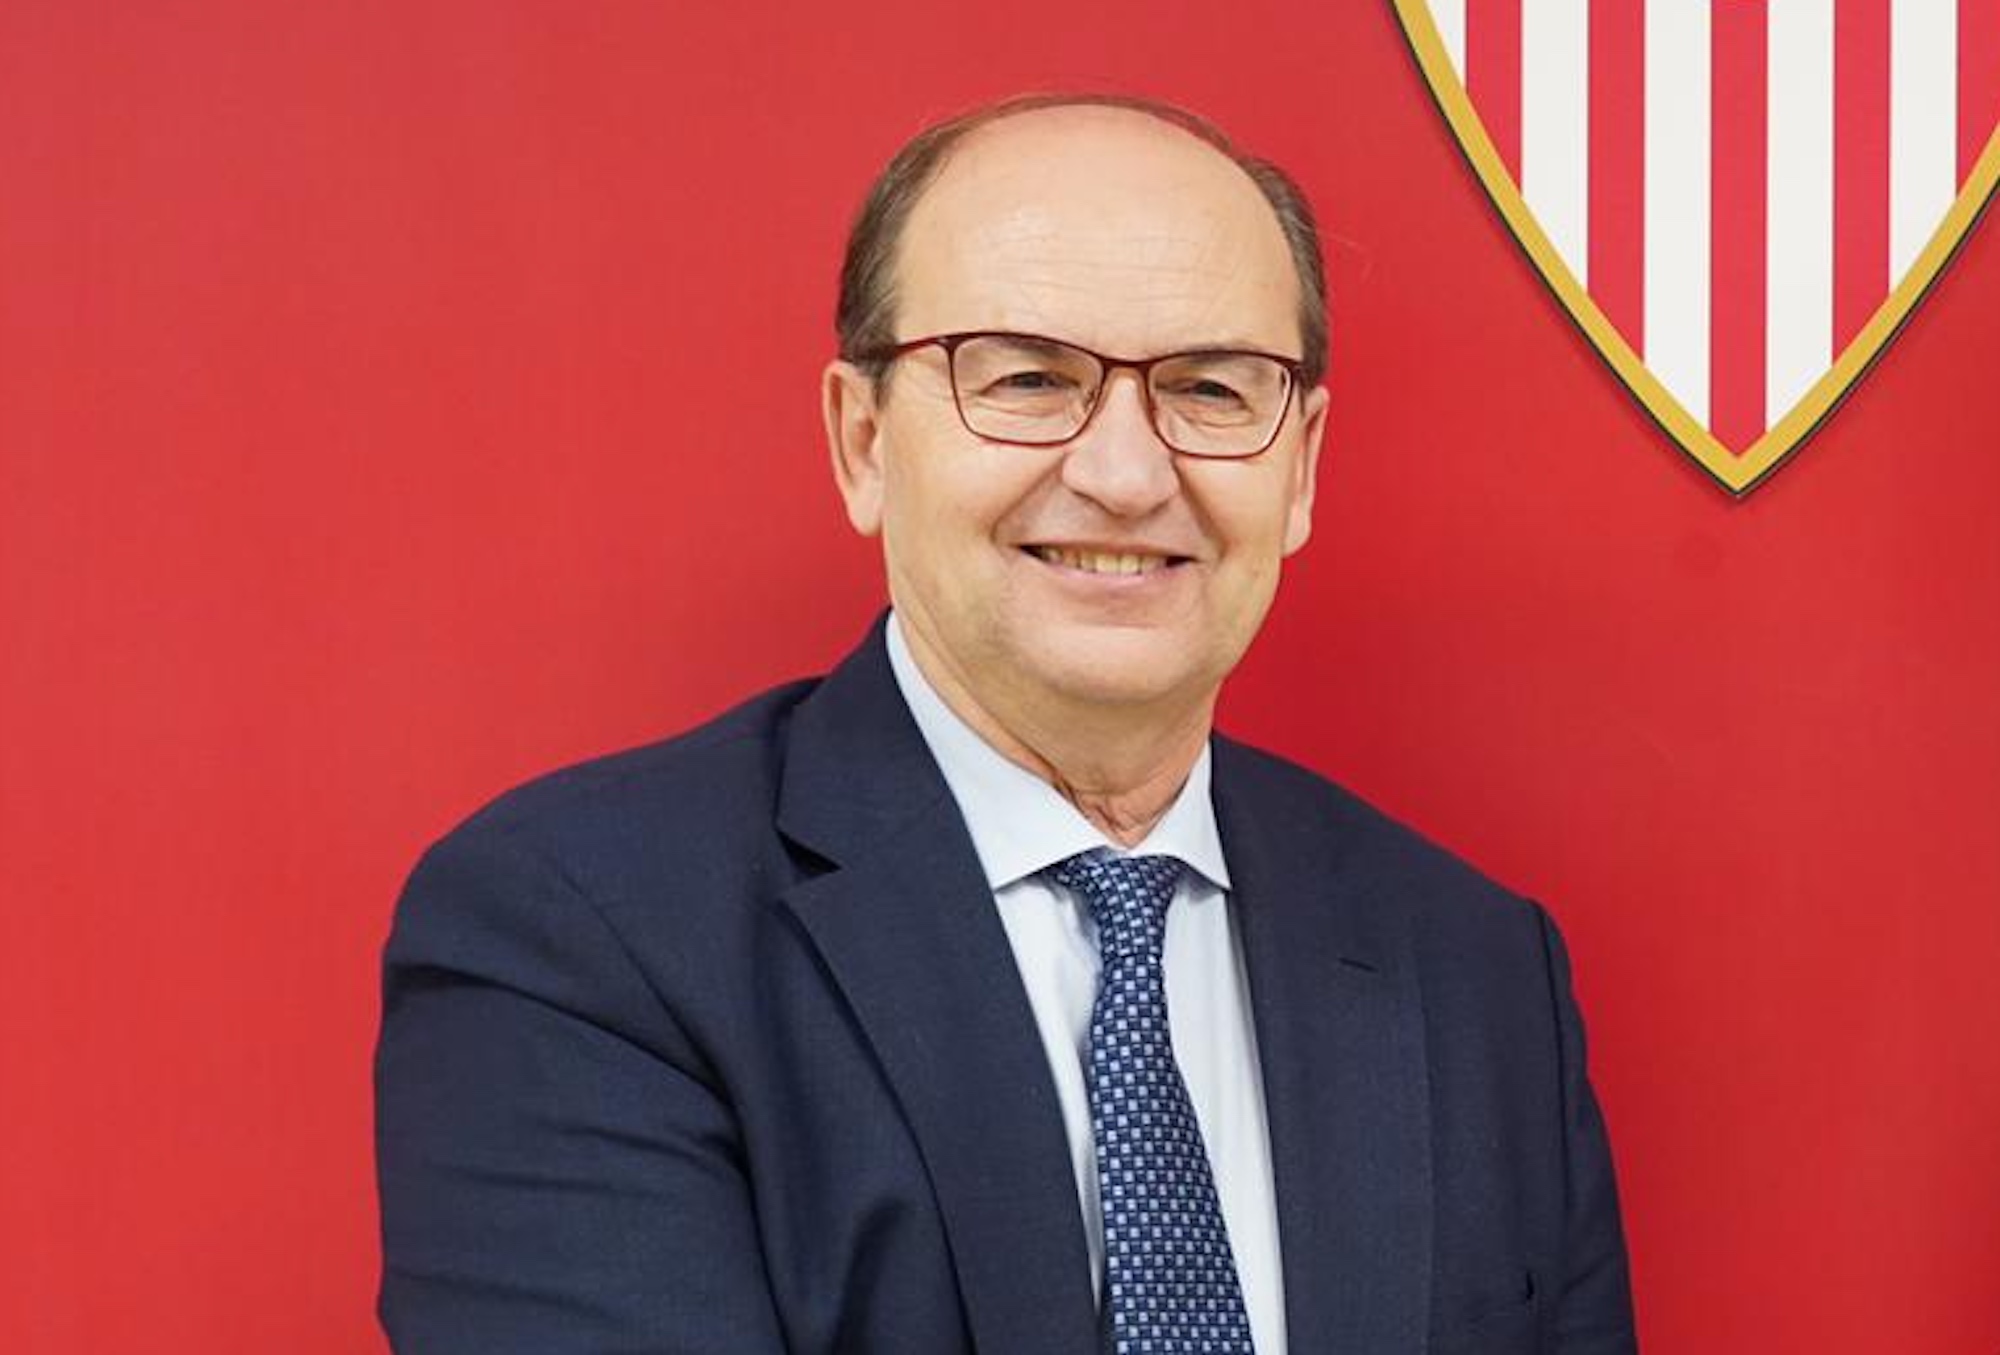 El reinicio de la Liga Española. Entrevista con Pepe Castro, presidente del Sevilla FC